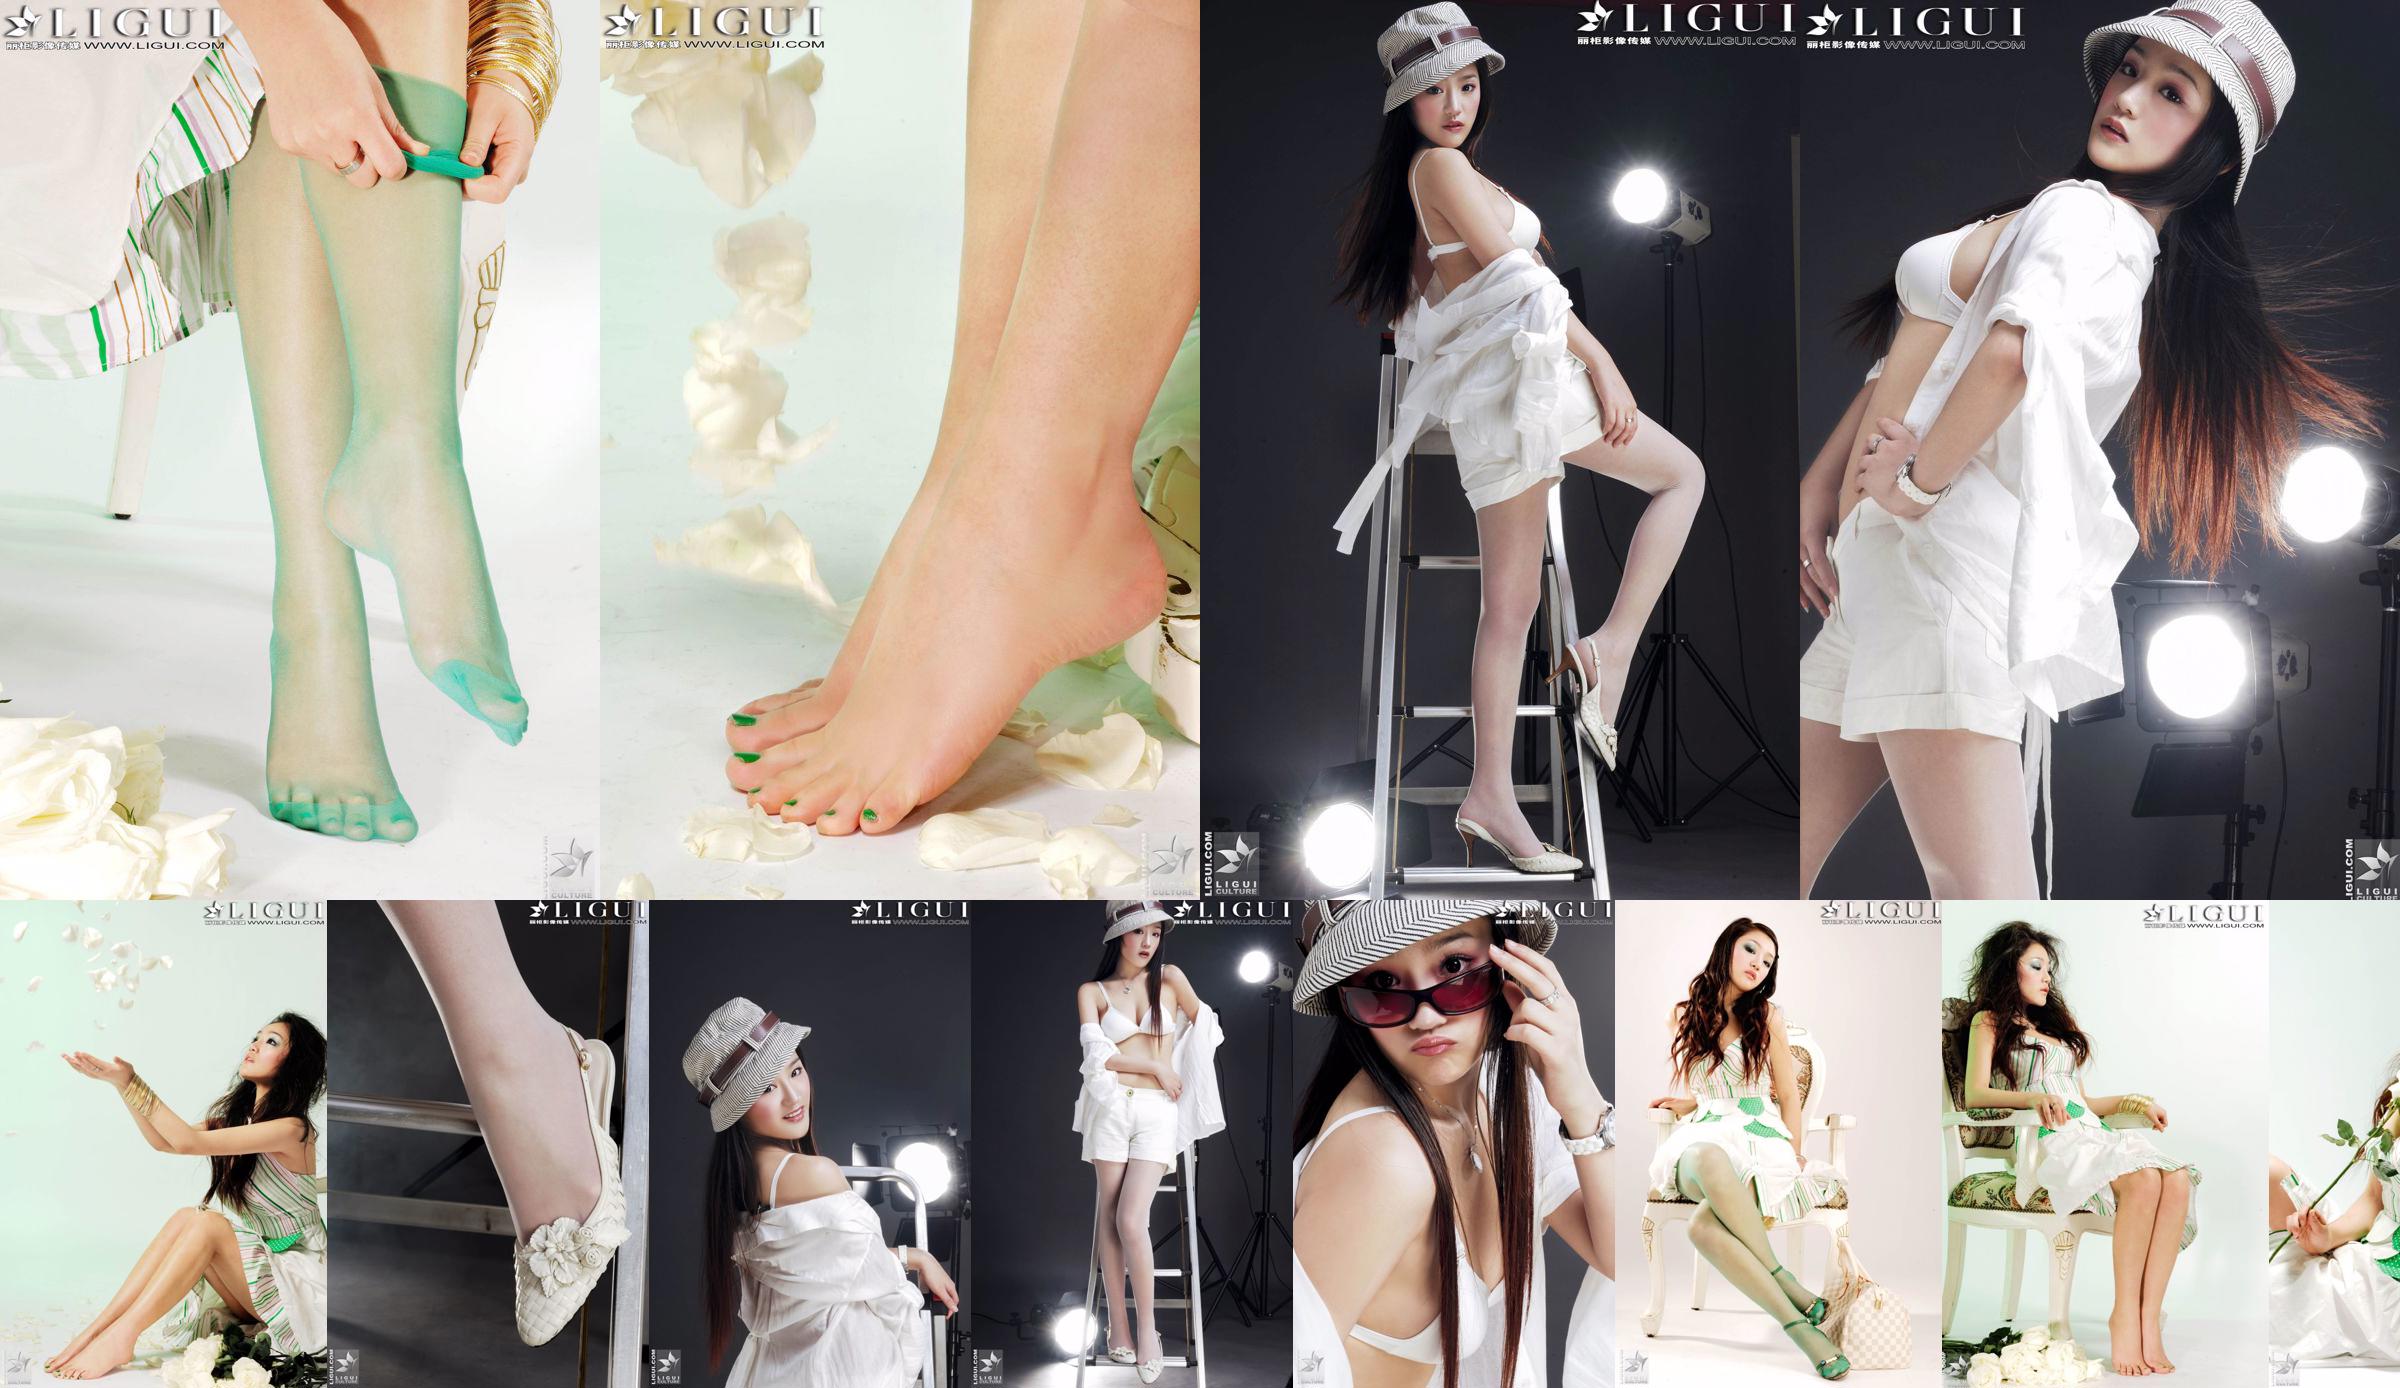 [丽 柜 贵 foot LiGui] Foto de "Fashionable Foot" de la modelo Zhang Jingyan de hermosas piernas y pies de seda No.ea4fce Página 1